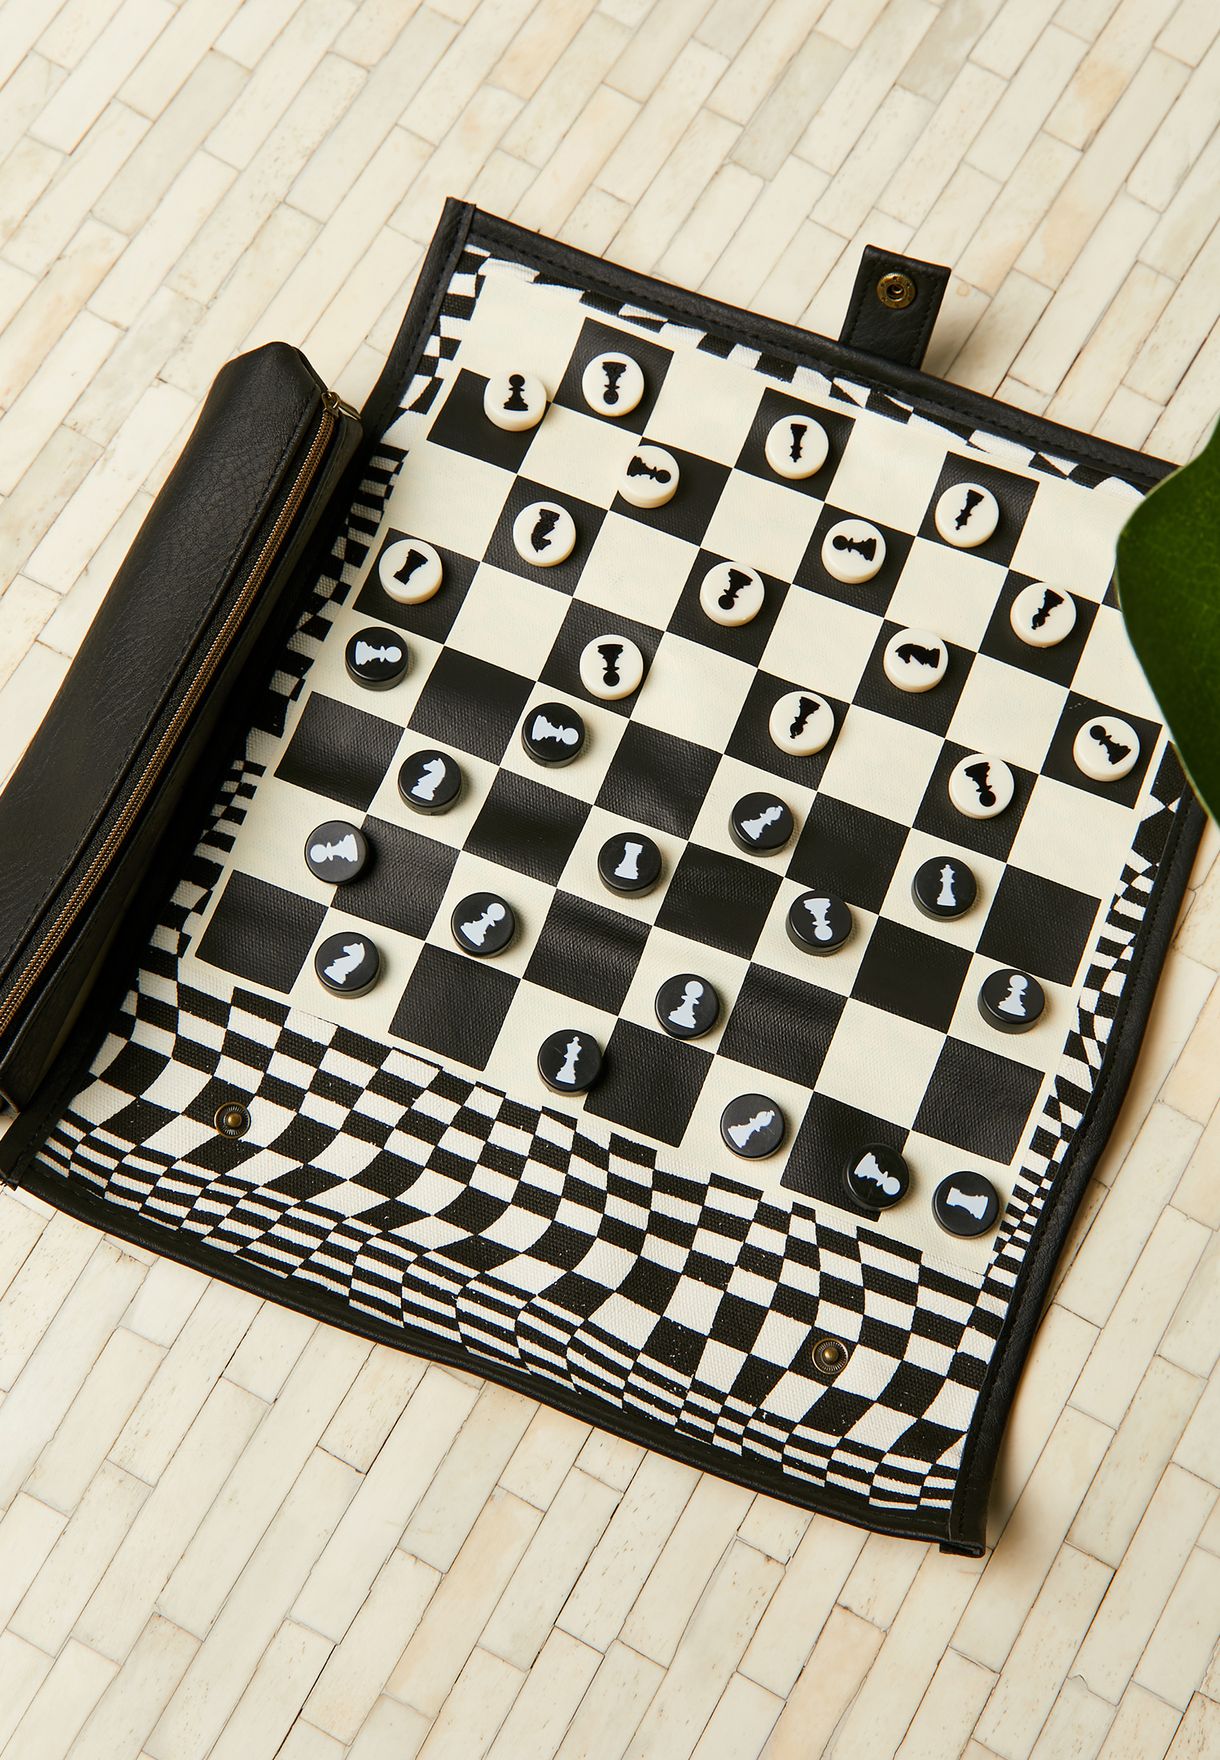 مجموعة من لعبة شطرنج وداما